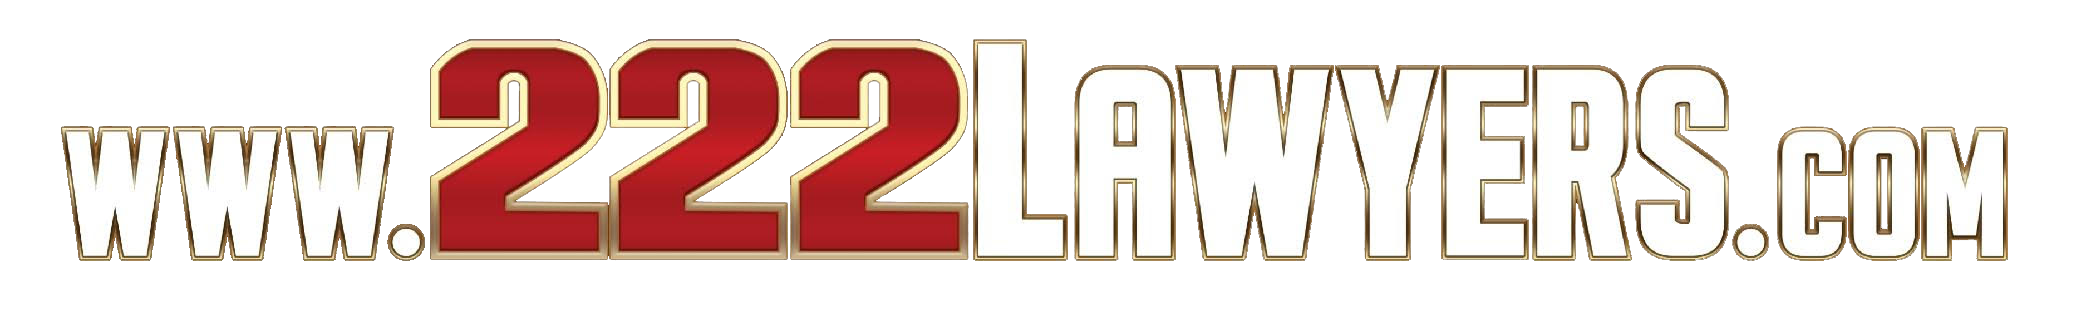 222Lawyers logo